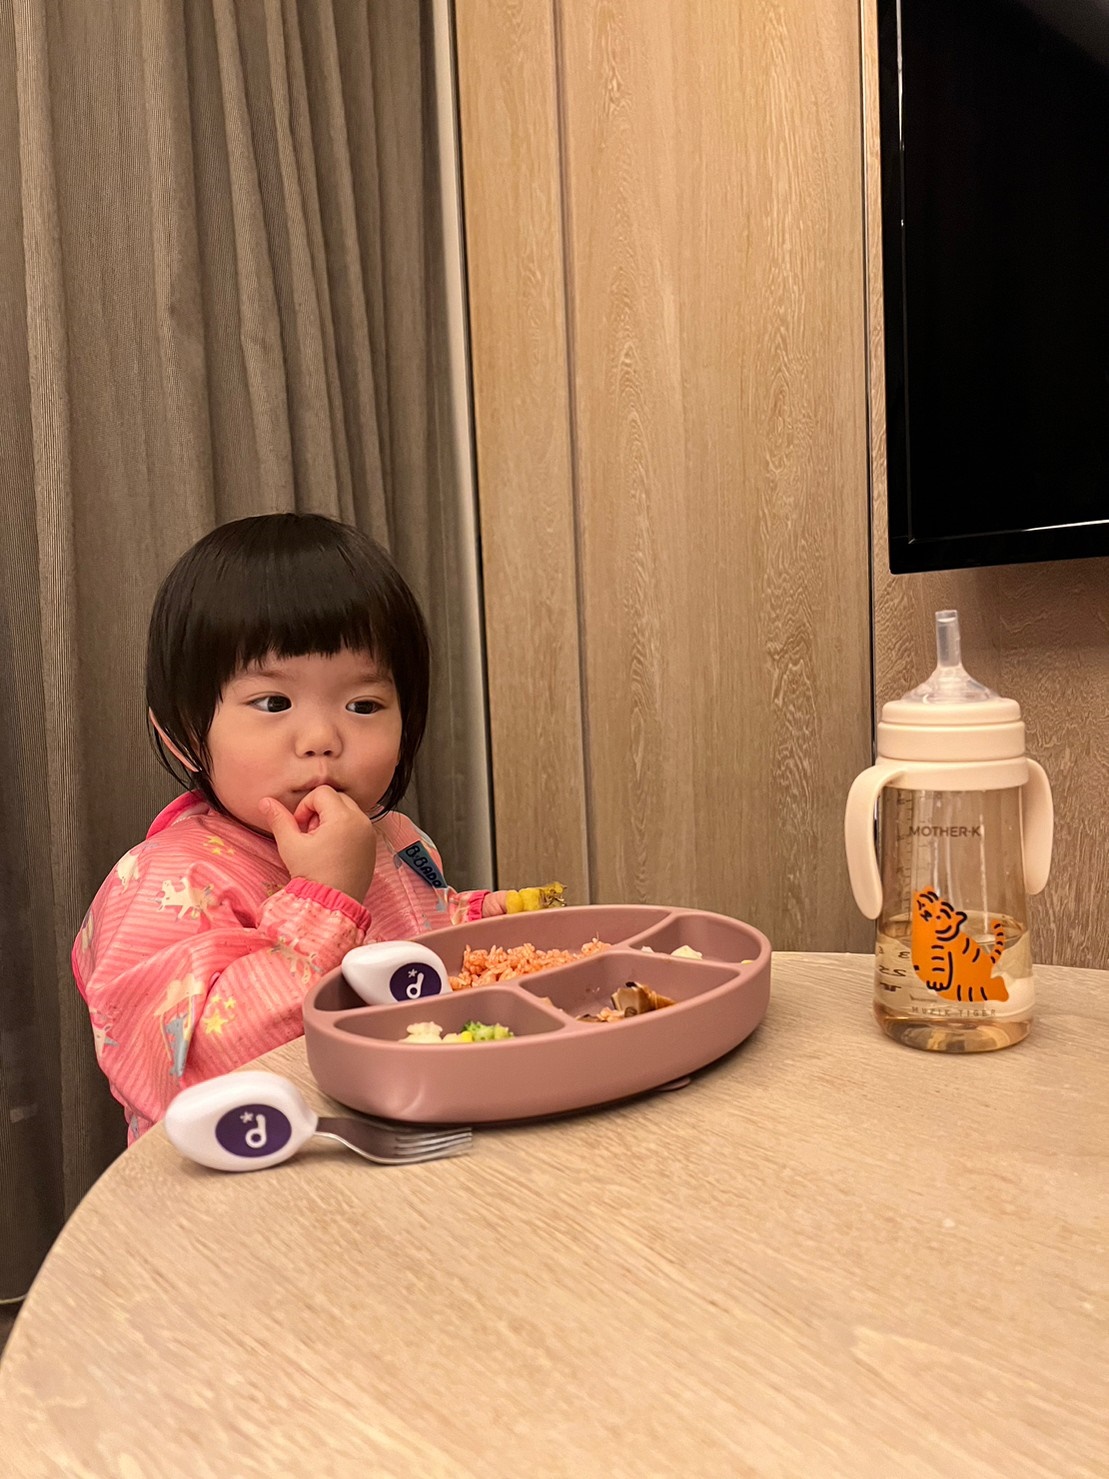 【韓國MOTHER-K】精萃極簡PPSU兔子奶瓶｜全台首團、奶瓶吸吸杯零食杯一瓶多用